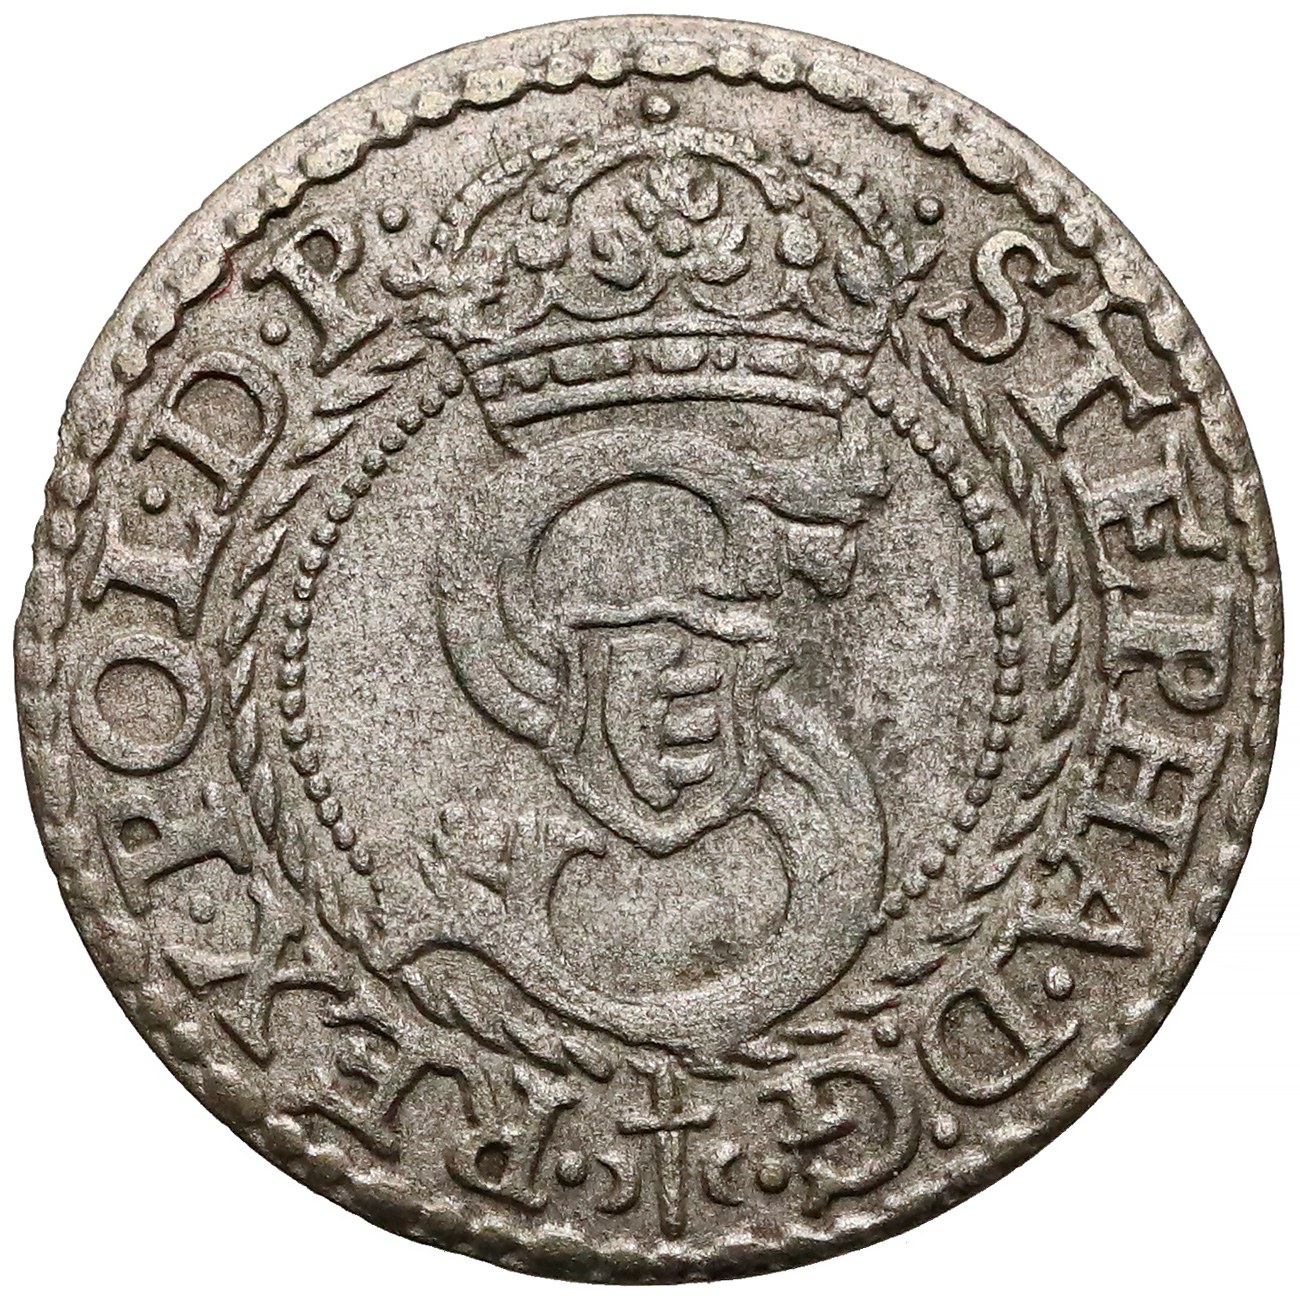 Монета речь посполита. 1 Солид (Шеляг).. Шеляг 1584. Серебряные монеты речи Посполитой 1605. Монеты вкл 1 Солид.